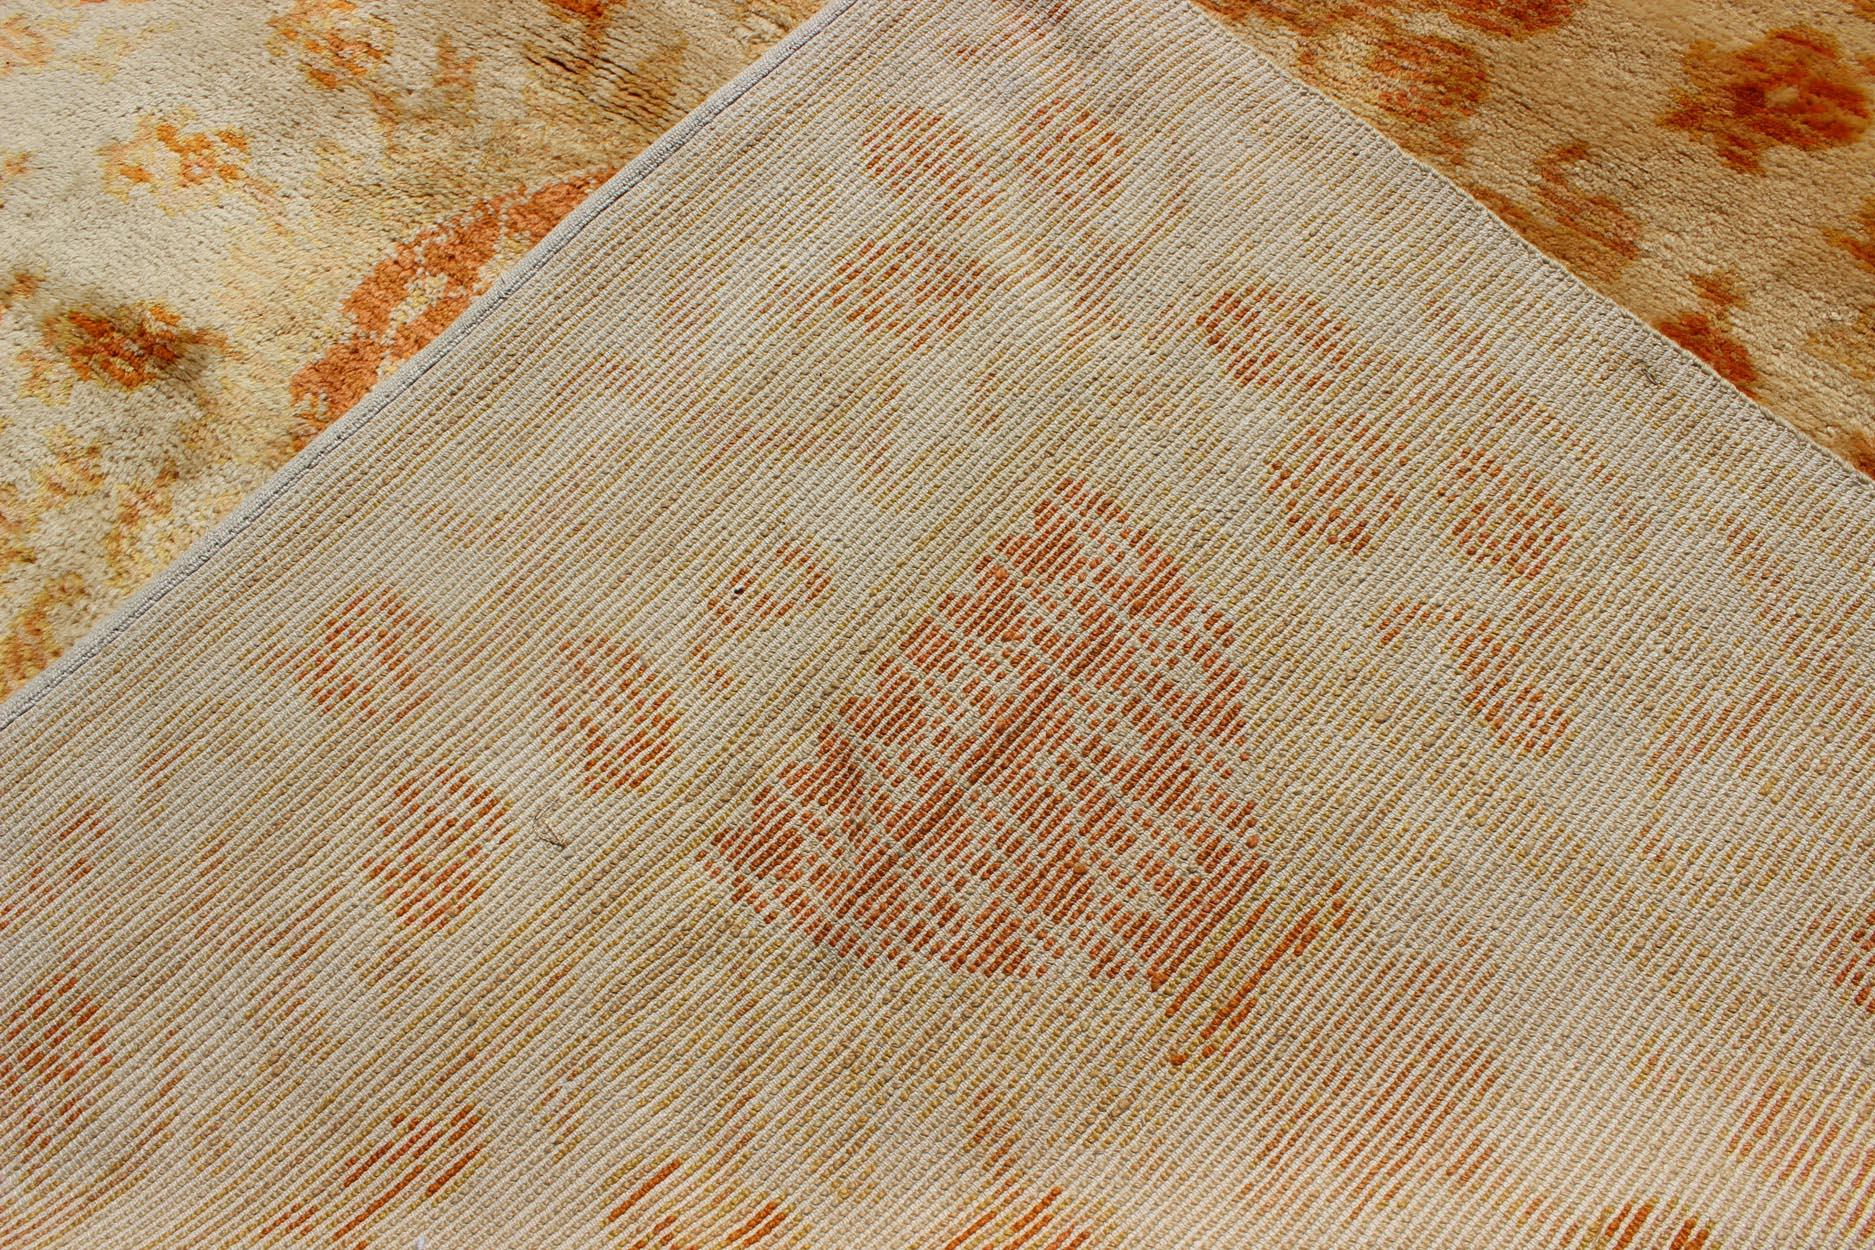 Antique Spanish European Carpet with Pineapple Design in Gold, Cream & Tangerine For Sale 5